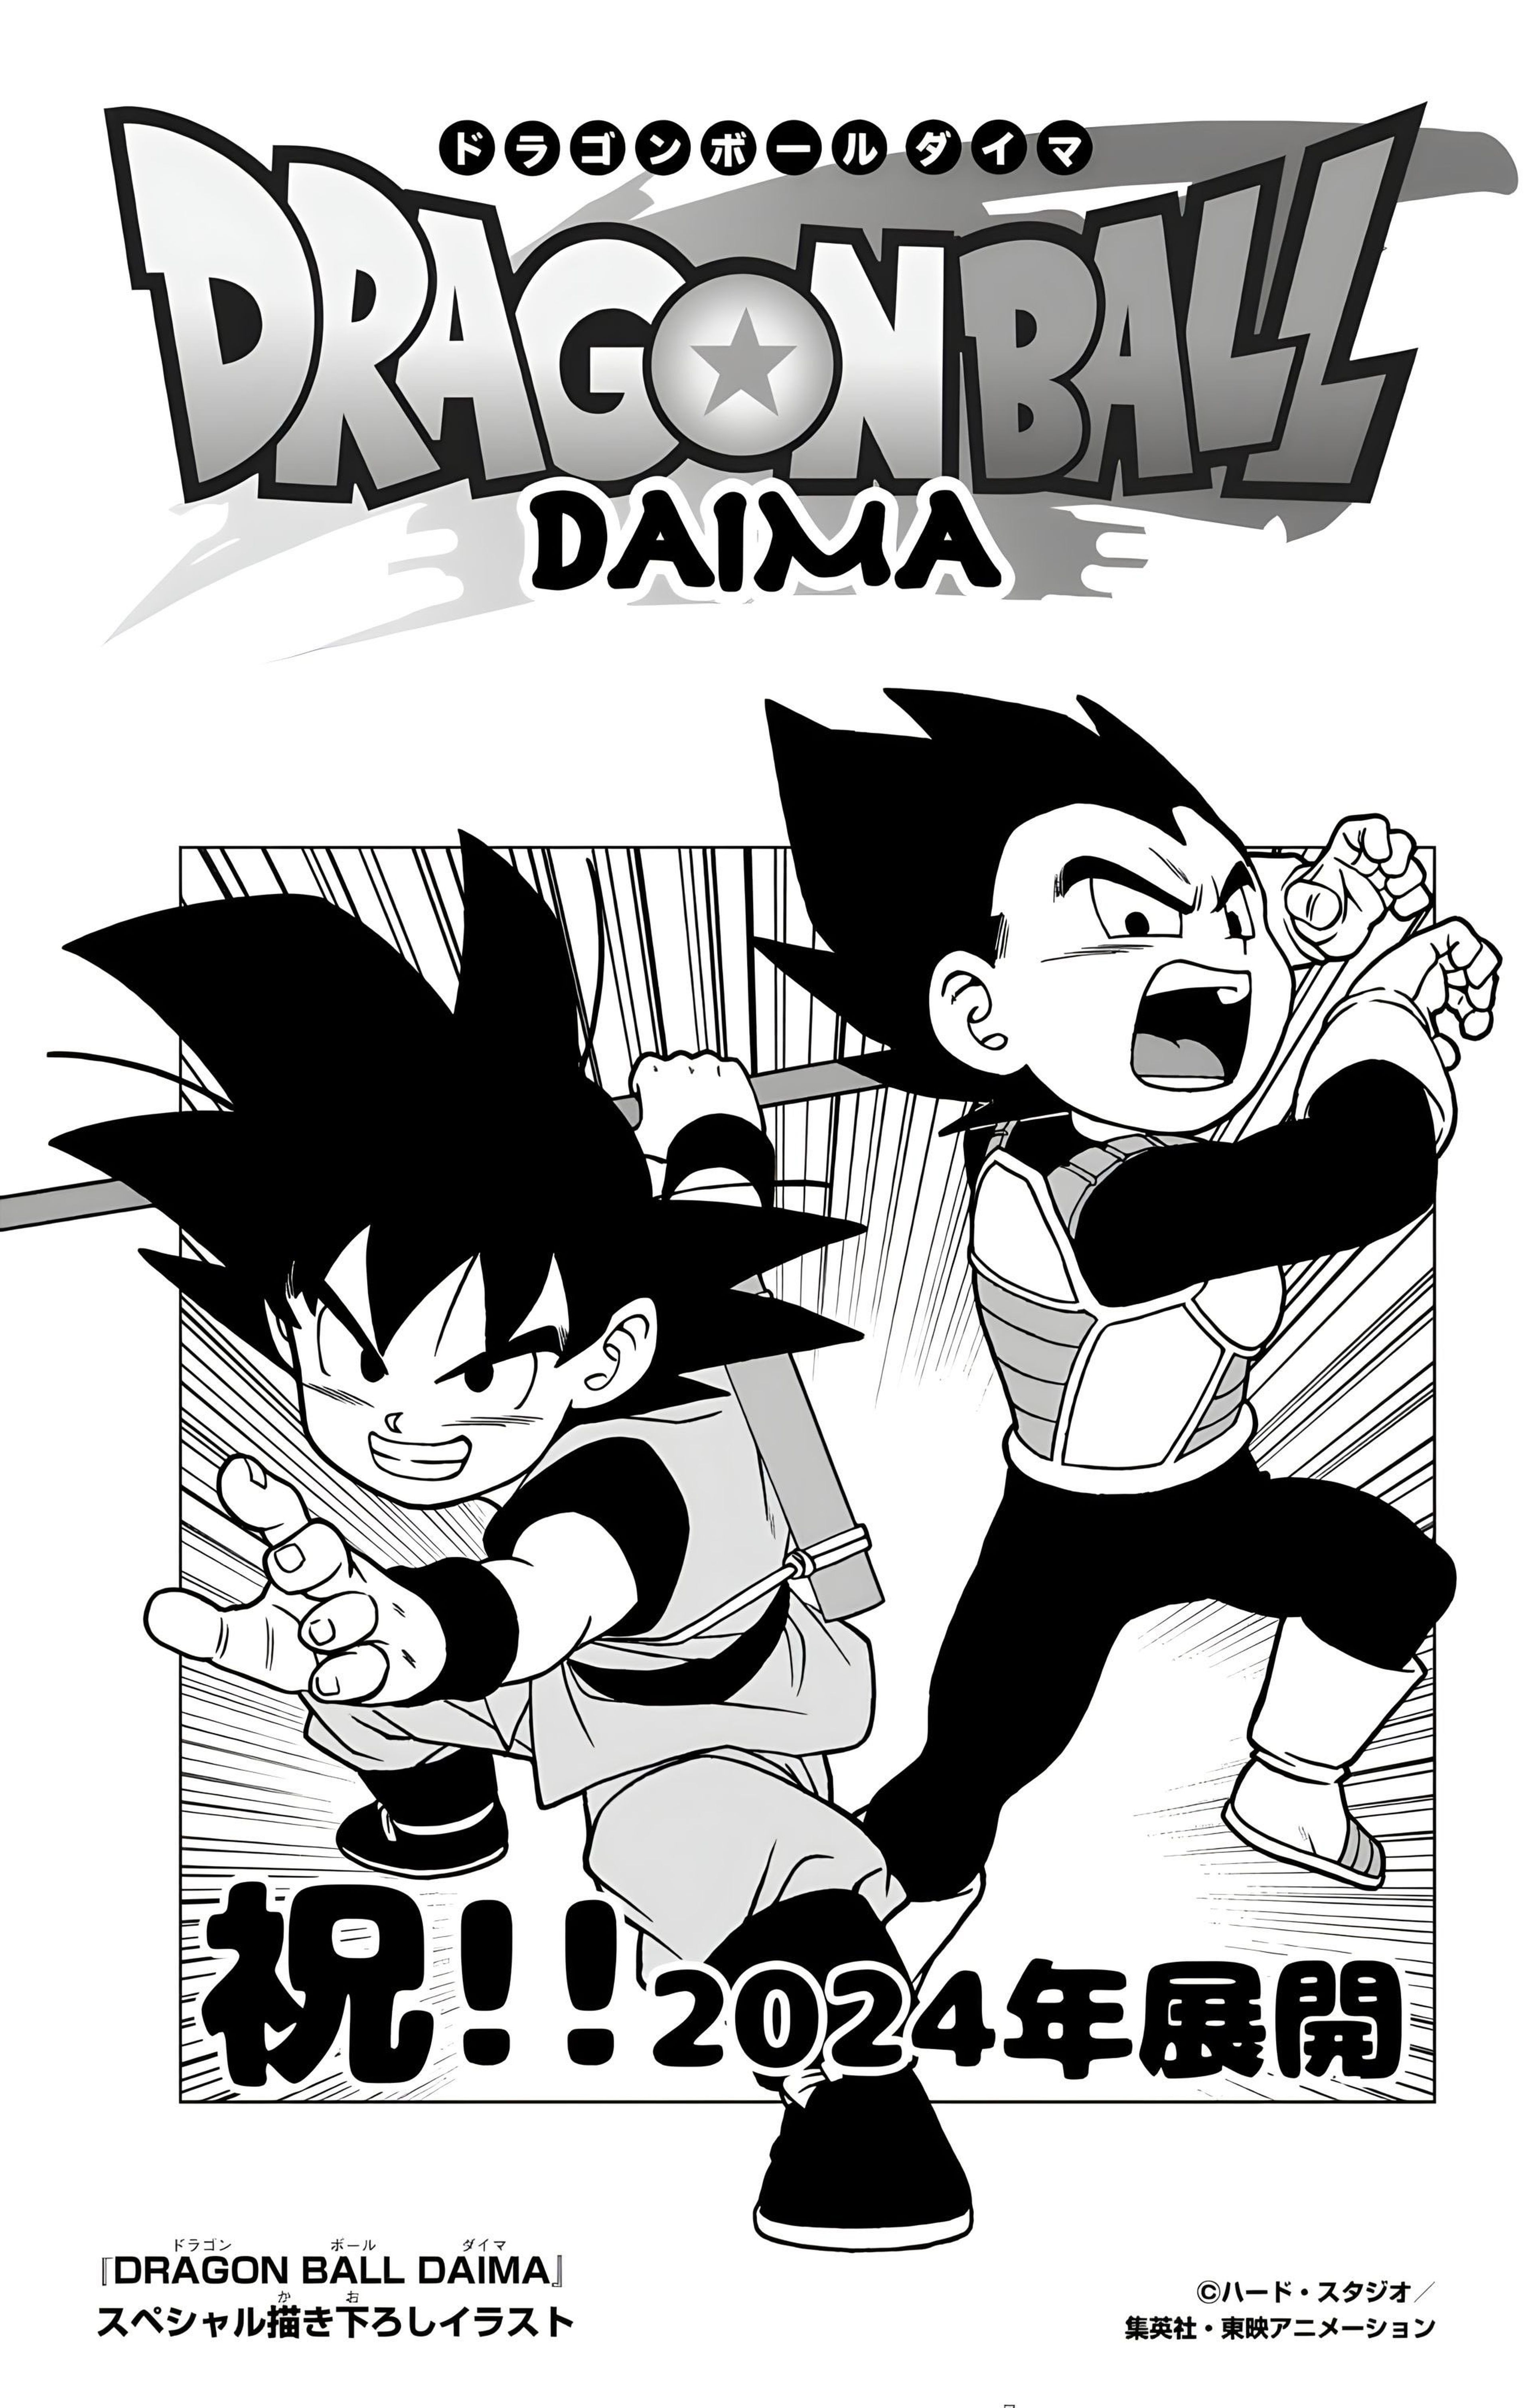 Dragon Ball Daima - Toyotaro publica una nueva ilustración de la serie protagonizada por los adorables Goku y Vegeta